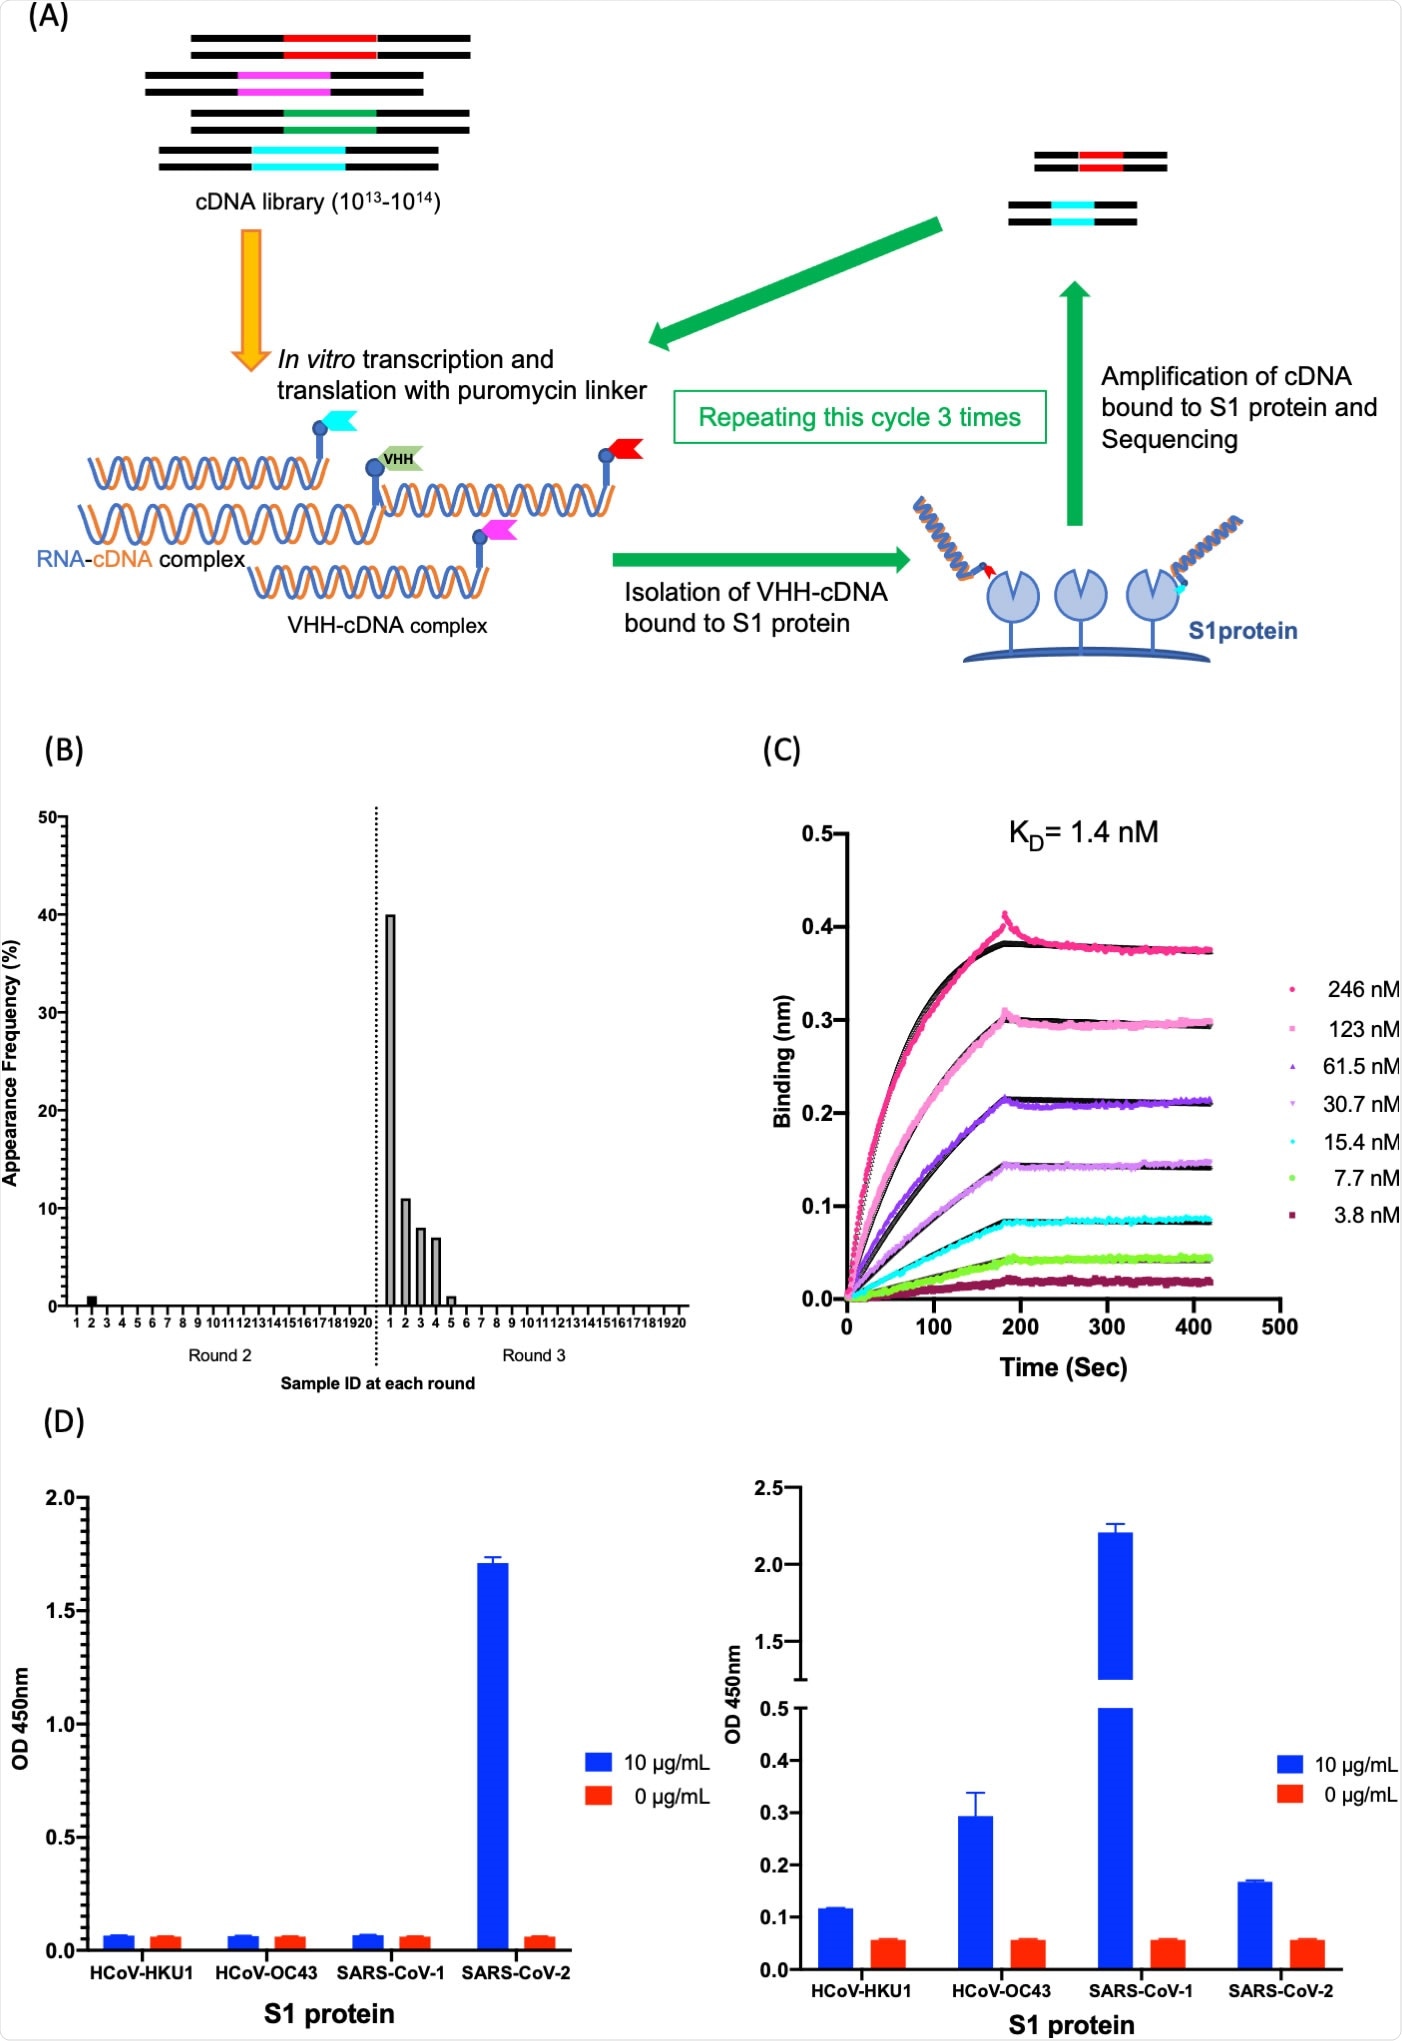 Aislamiento y caracterización de K-874A. (a) Diagrama esquemático que muestra la selección in vitro de VHHs contra la proteína de SARS-CoV-2 S1 usando el despliegue de VHH-cDNA. La transcripción y la traslación ines vitro de la biblioteca de VHH-cDNA forman VHH conectado a su mRNA a una máquina para hacer chorizos del puromycin. el cDNA del mRNA conectado reverso-fue transcrito y el complejo de VHH-cDNA fue producido. la proteína inmovilizada S1 del complejo de VHH-cDNA de la Alto-afinidad fue aislada, y su cDNA fue amplificado. Tres cartuchos de selección fueron realizados, las bibliotecas del cDNA de los cartuchos 2 y 3 fueron ordenadas, y tradujeron a los candidatos de anti-SARS-CoV-2 VHH. (b) Distribución de frecuencia de las series de aminoácido correspondiente a los candidatos del anticuerpo de VHH que apuntan subunidades de SARS-CoV-2 S1 en las bibliotecas seleccionadas de VHH. La identificación “1